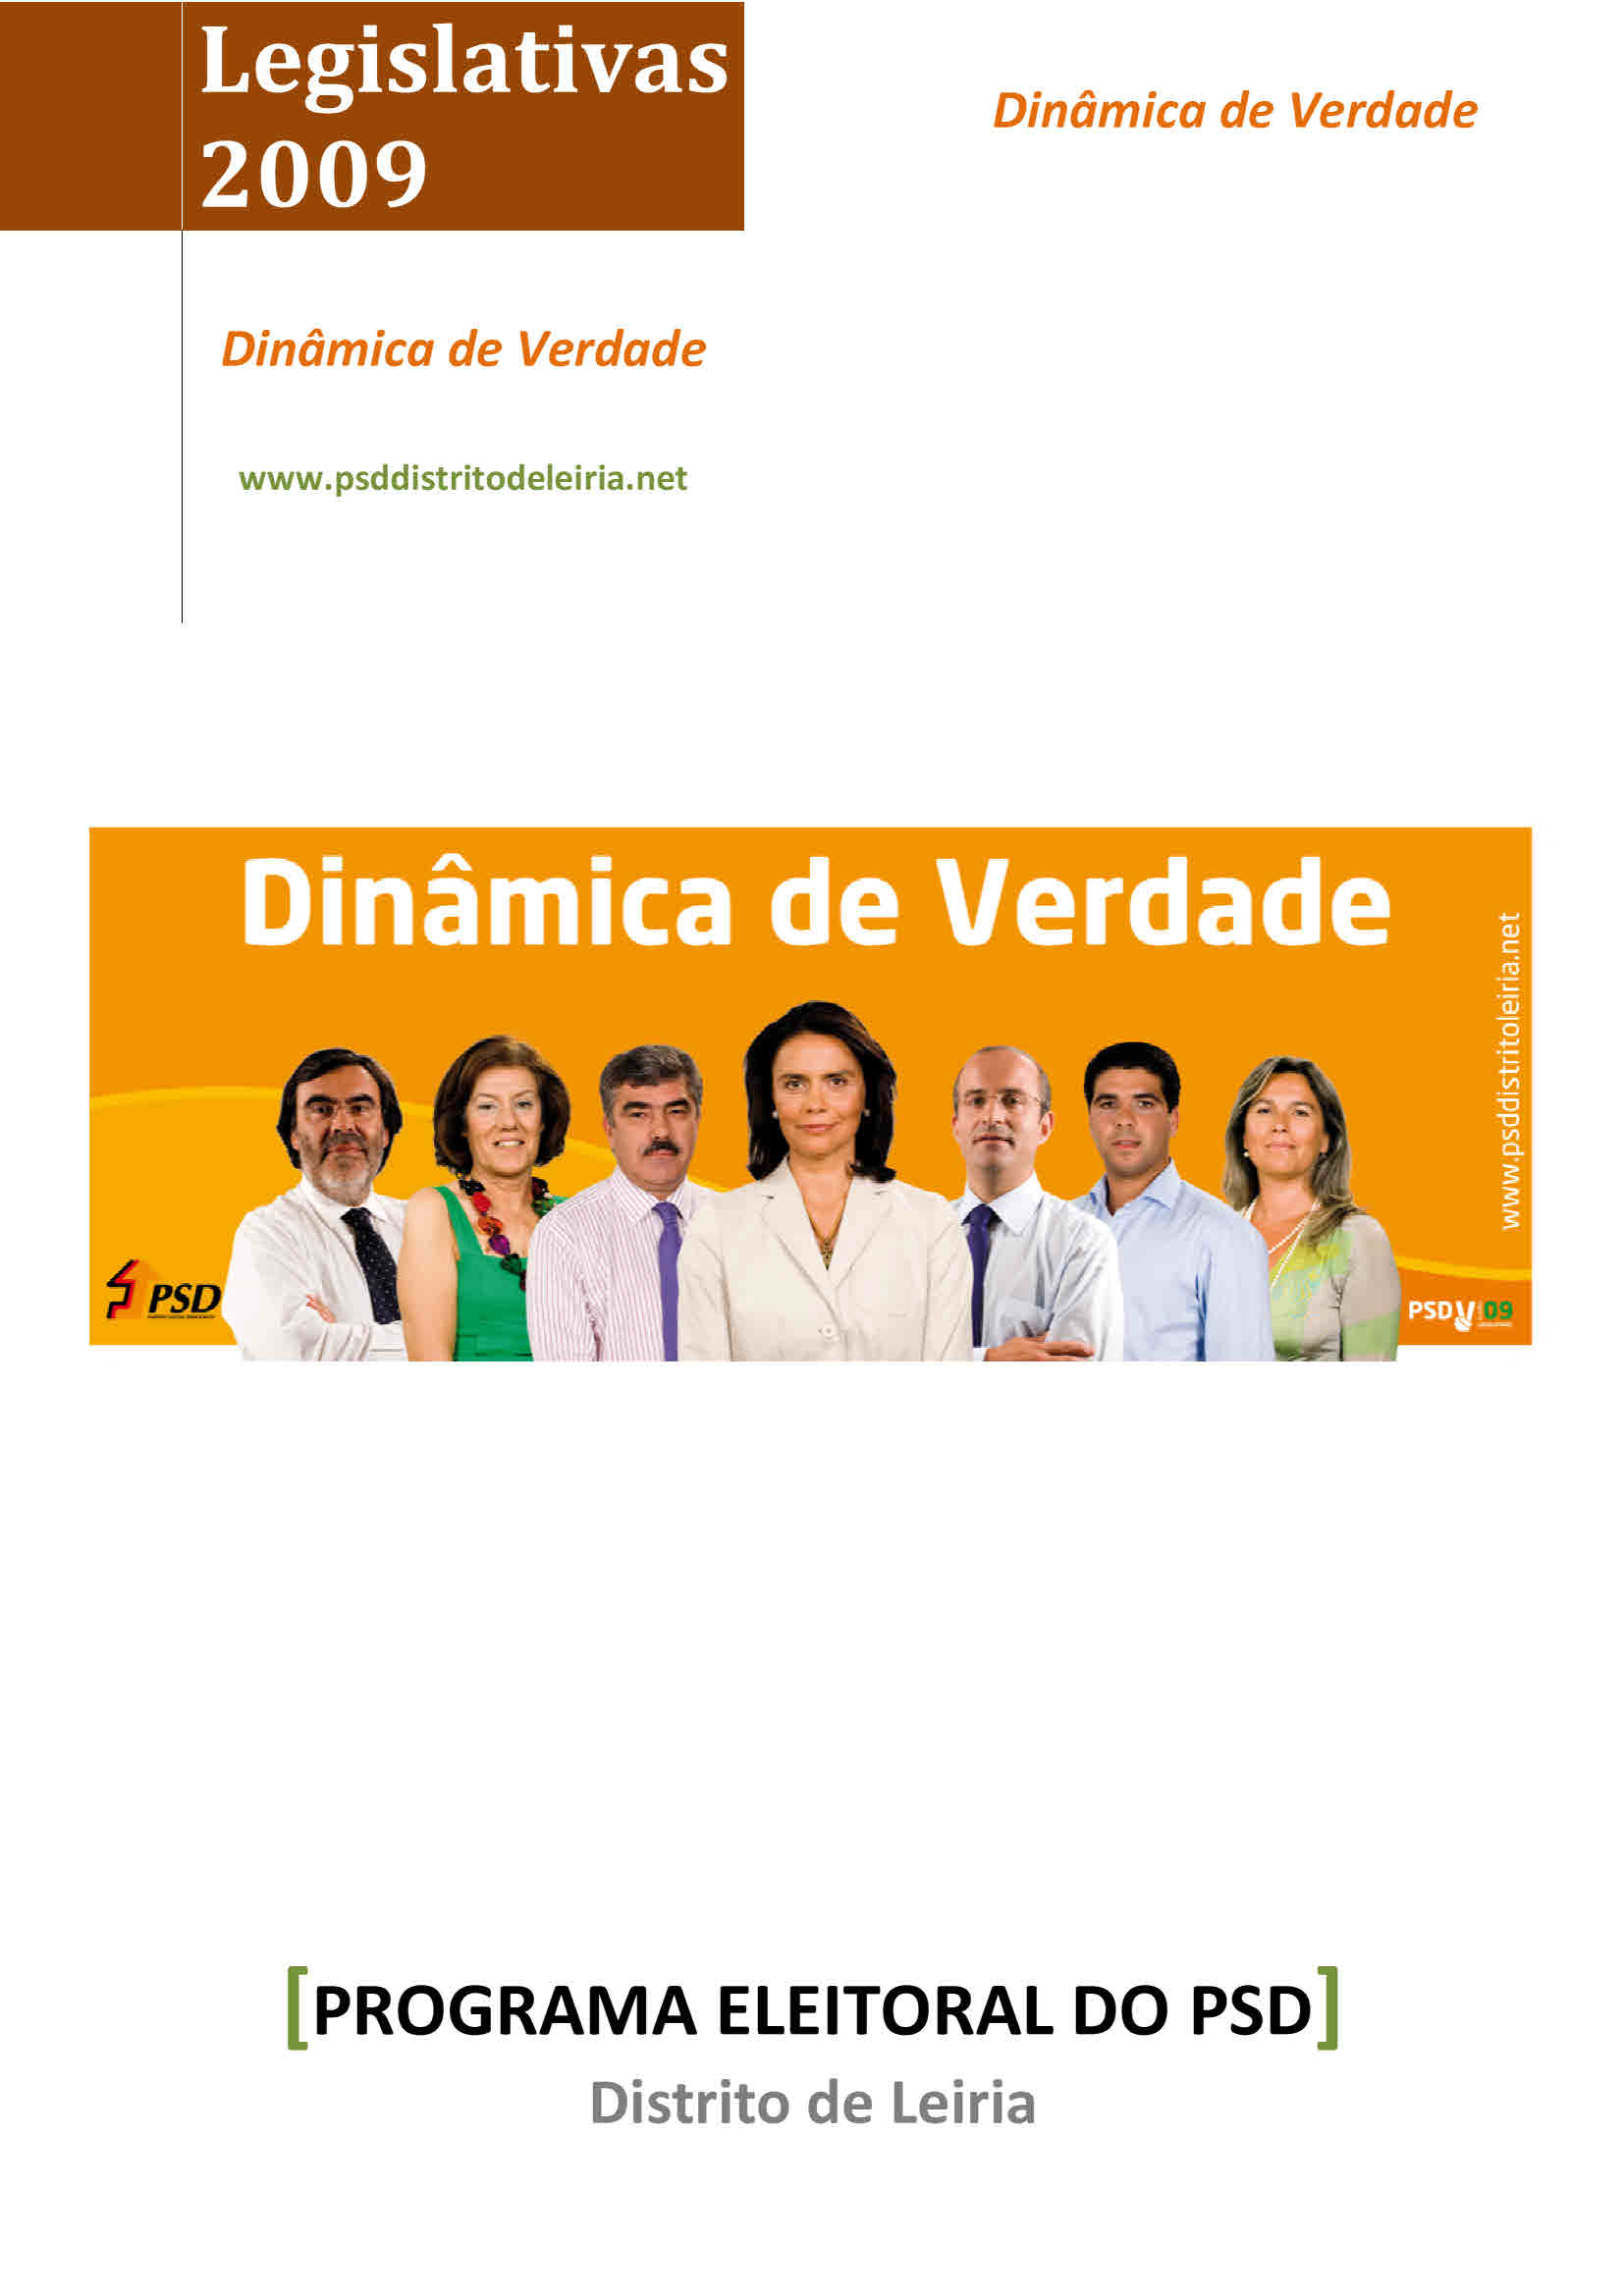 Copy of Programa Legislativas 2009